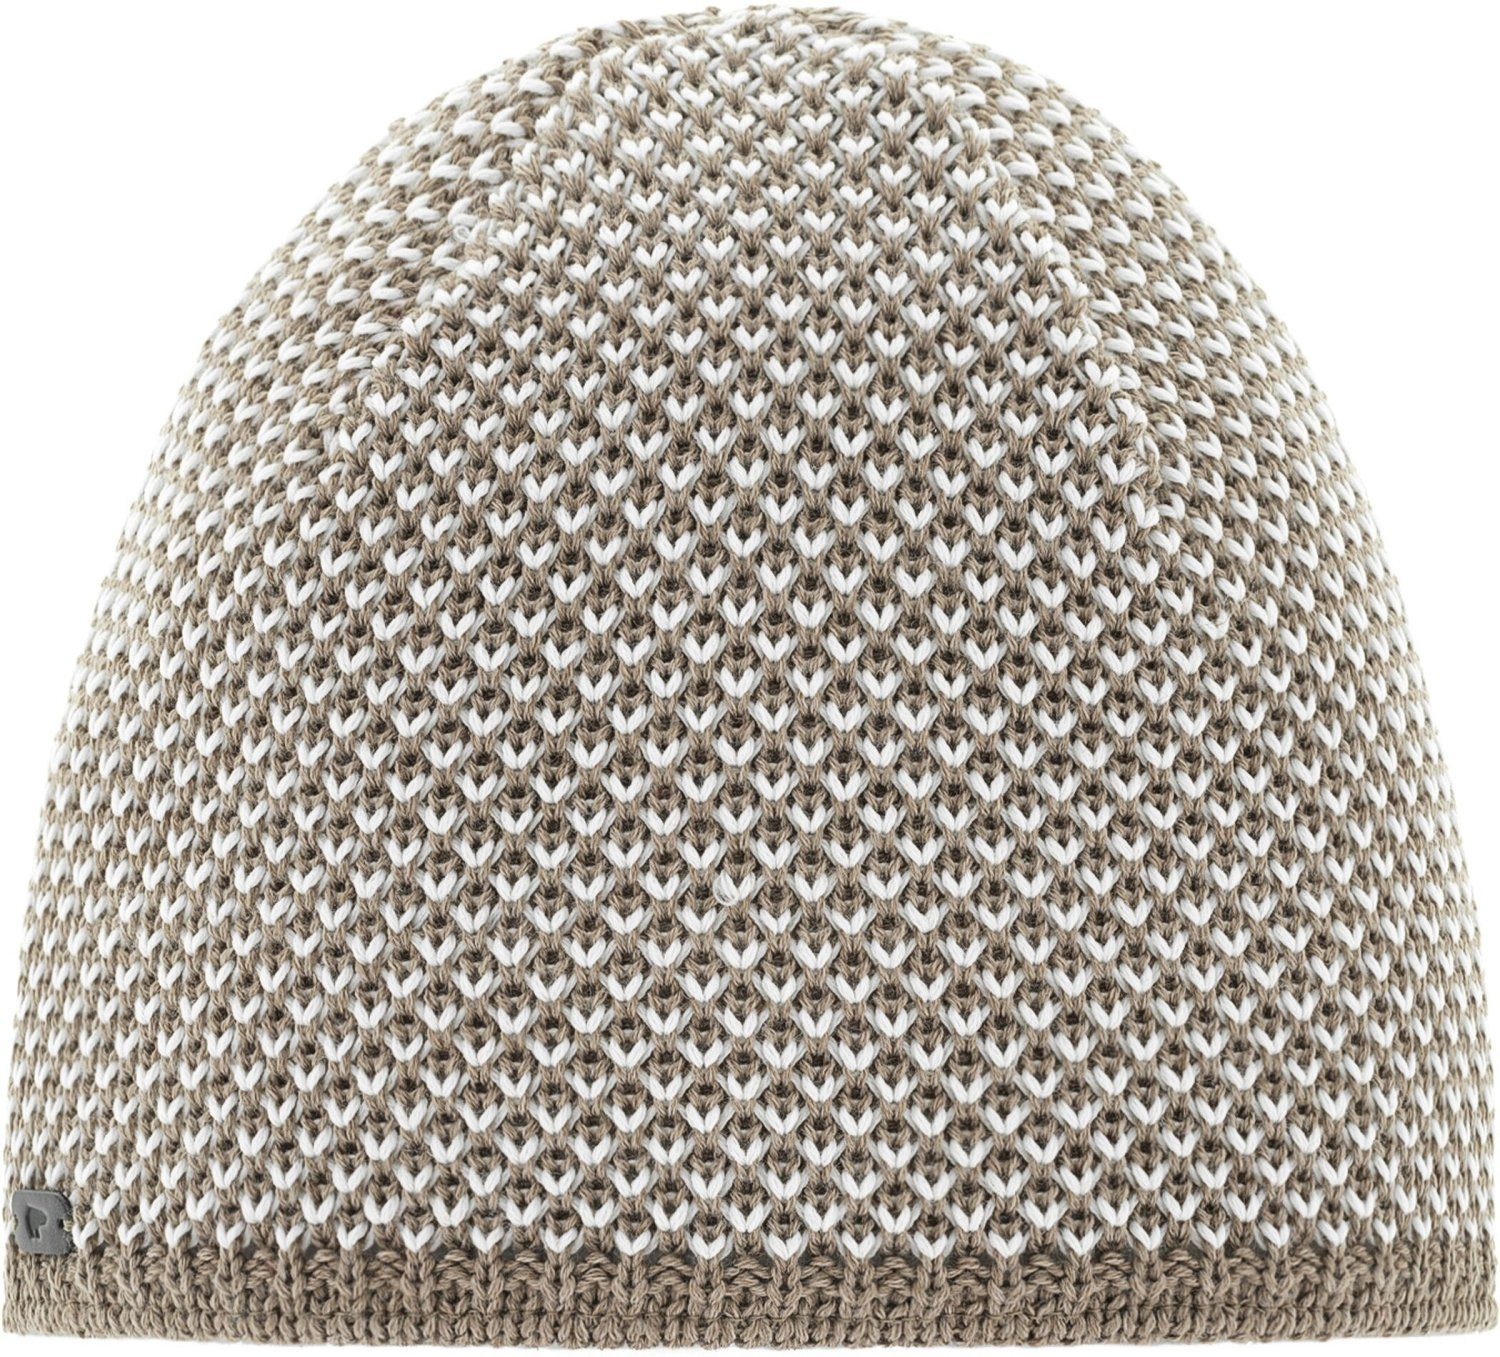 Eisbär Strickmütze Sanja Mütze mit beige/braun Struktur